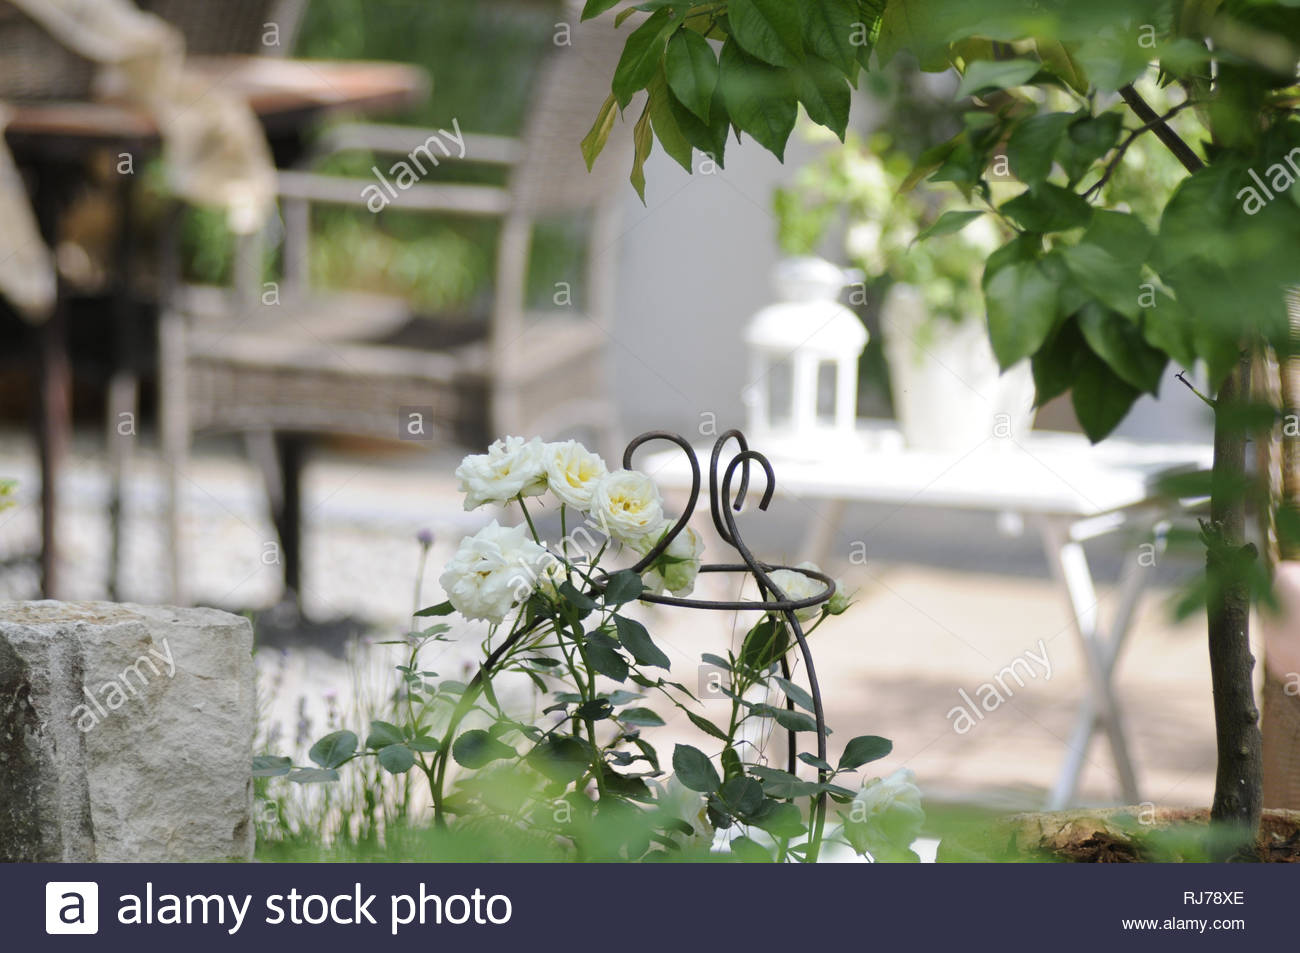 terrassendeko in wei und grntnen weie rosen rankgitter im vordergrund rechts ein orangenbumchen navel foyos RJ78XE